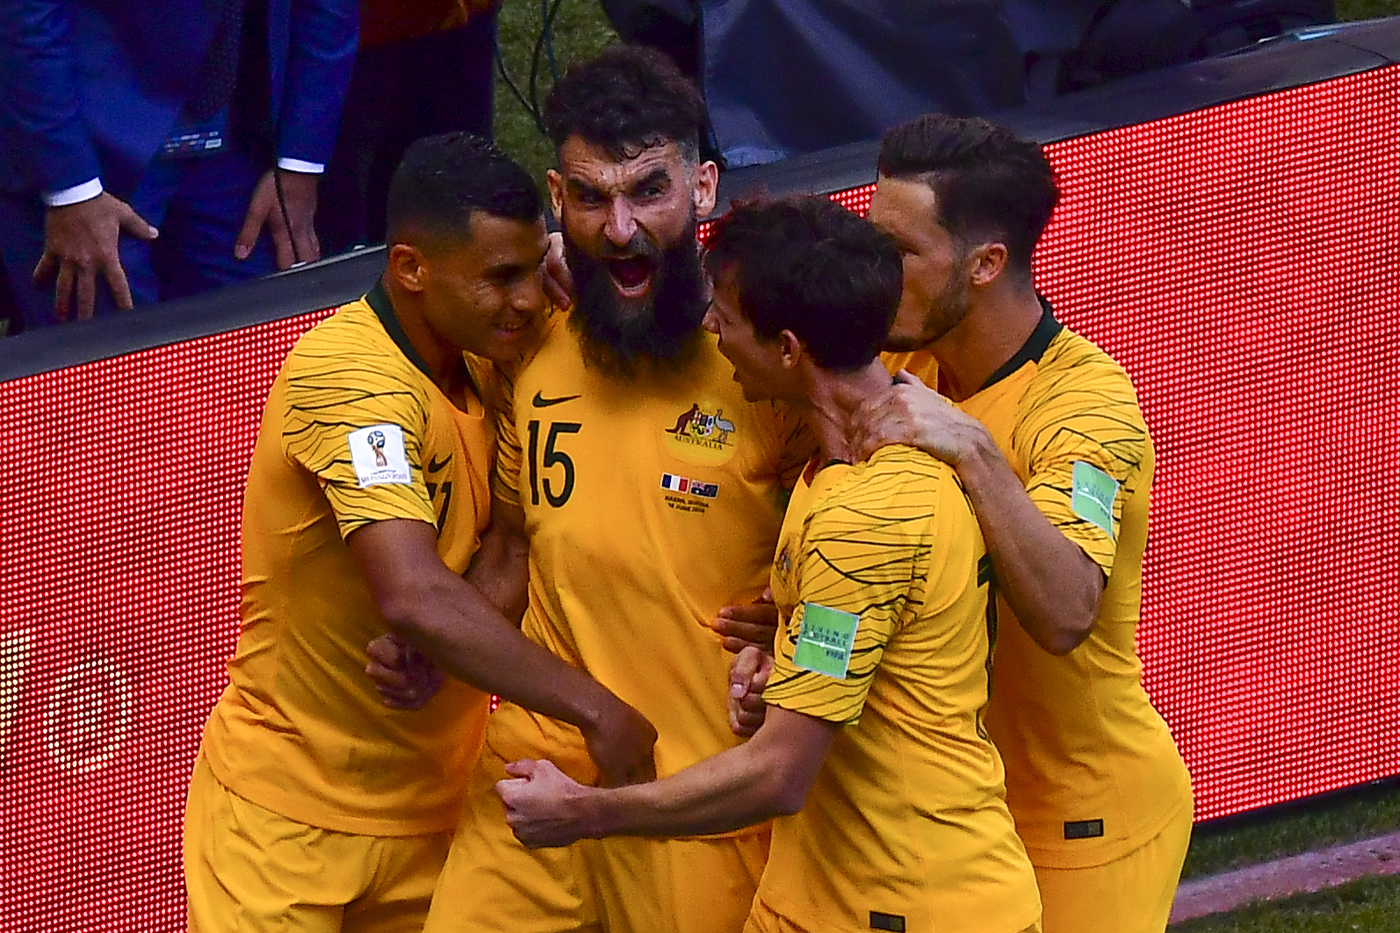 Australia-Perù 26 giugno, analisi e pronostico Mondiali Russia 2018 girone C